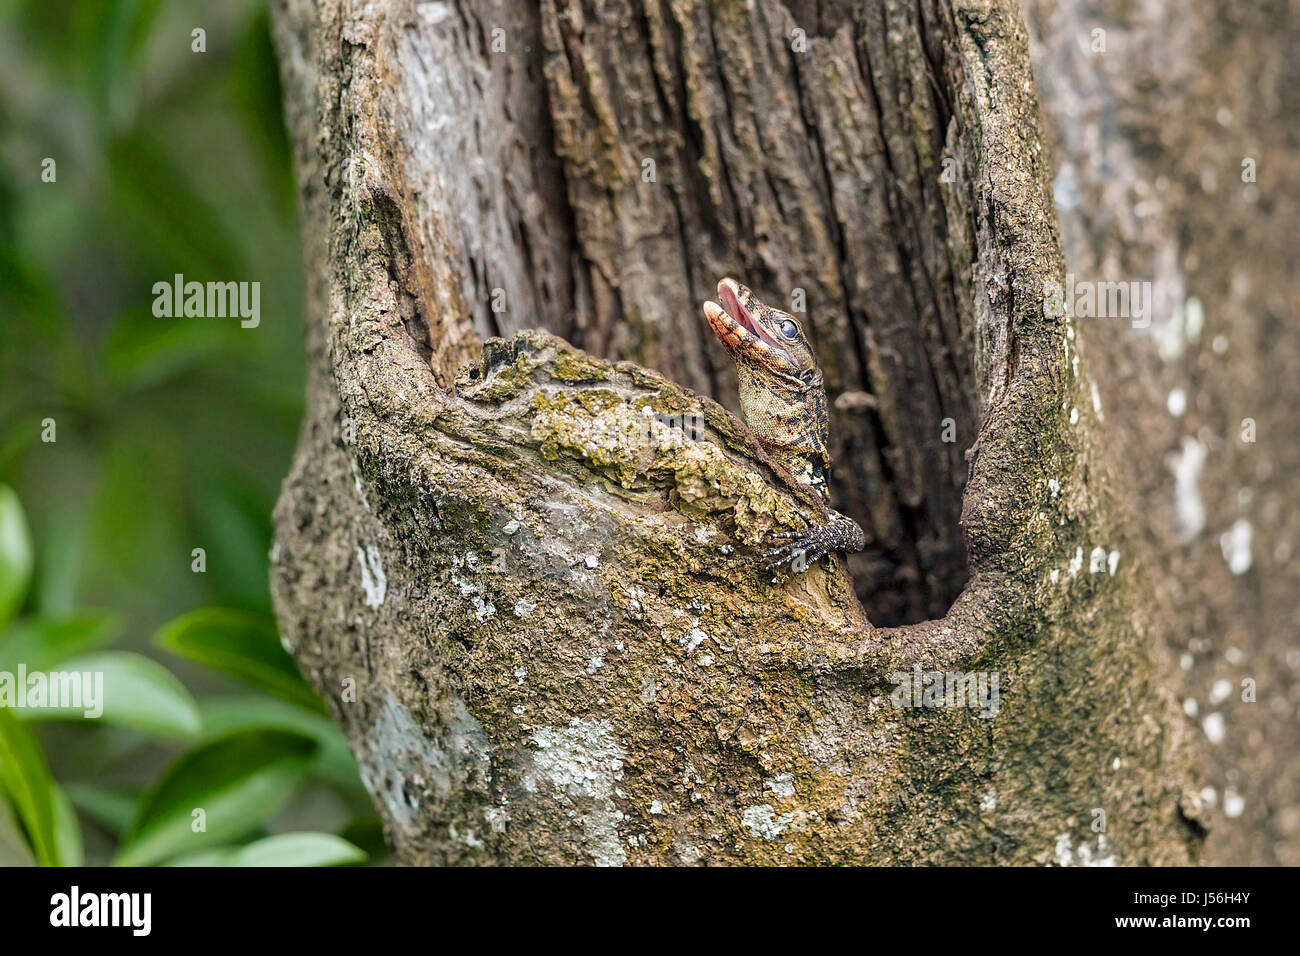 L'eau des tortues Varan (Varanus salvator) sortant d'imbriquer dans le creux du tronc d'arbre dans une forêt de mangrove, Singapour Banque D'Images